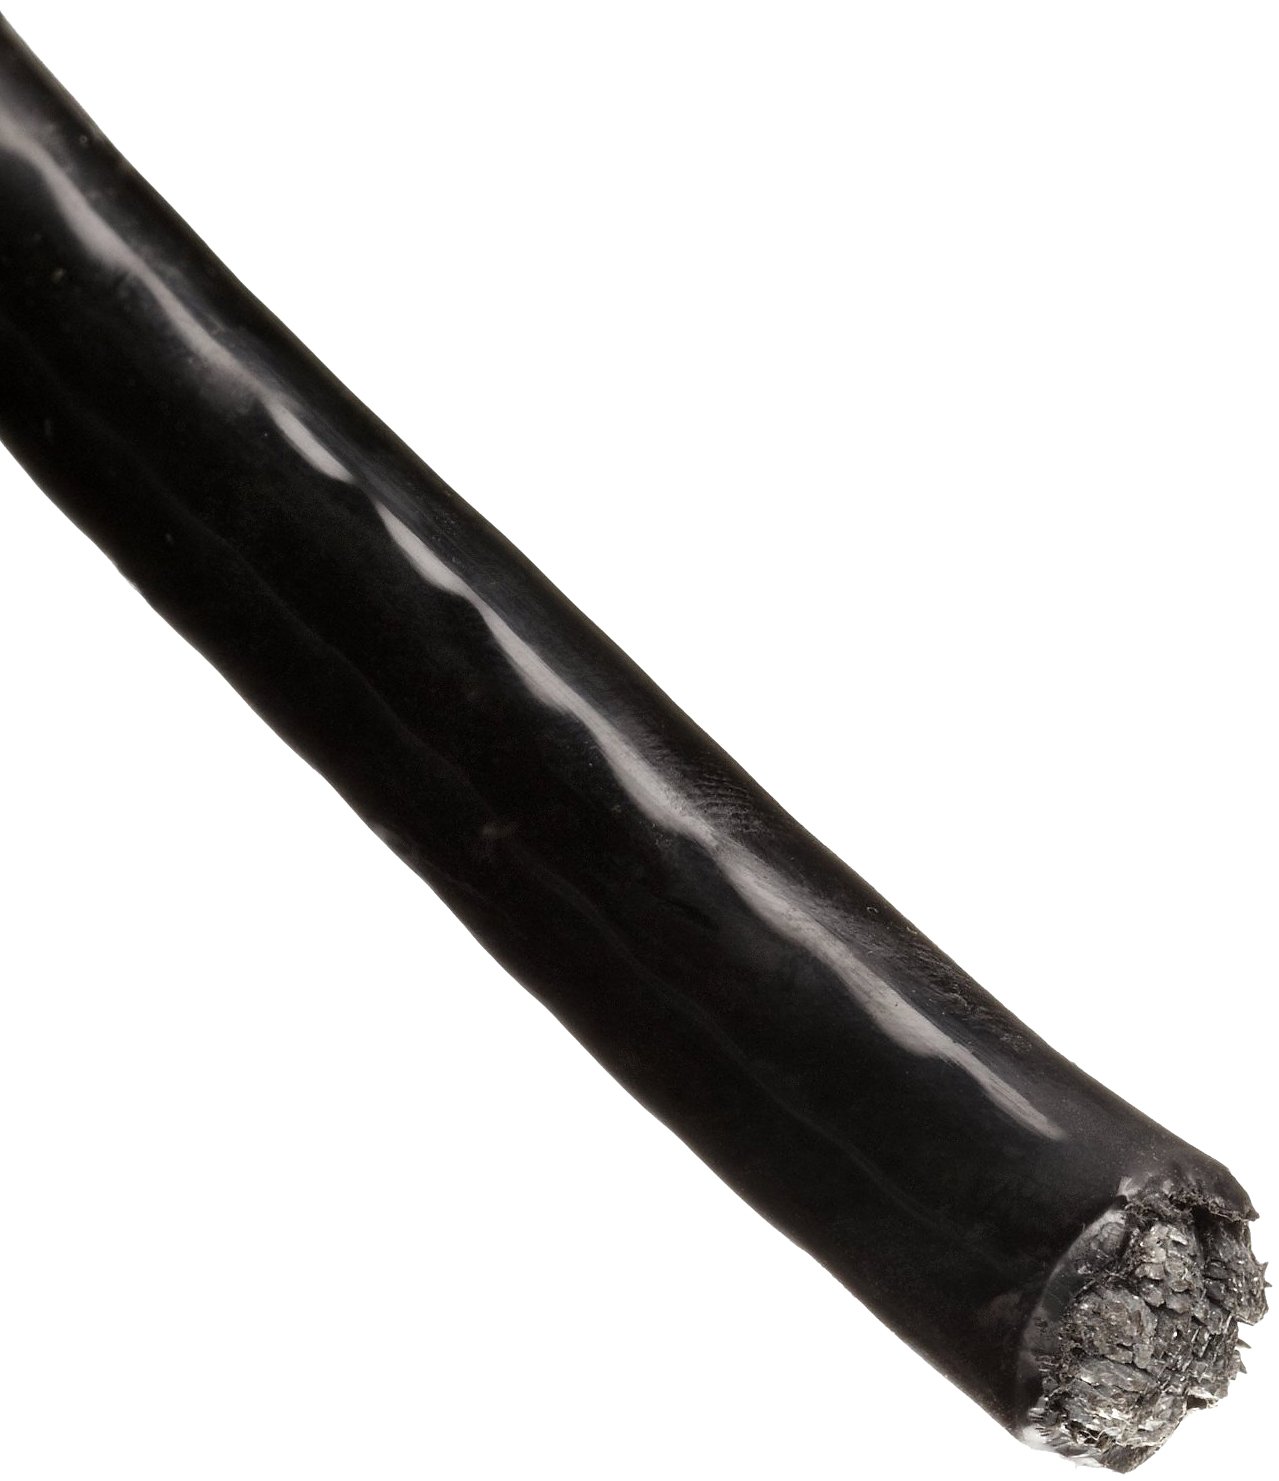 Трос в ПВХ оболочке 8 мм непрозрачный черный - фото